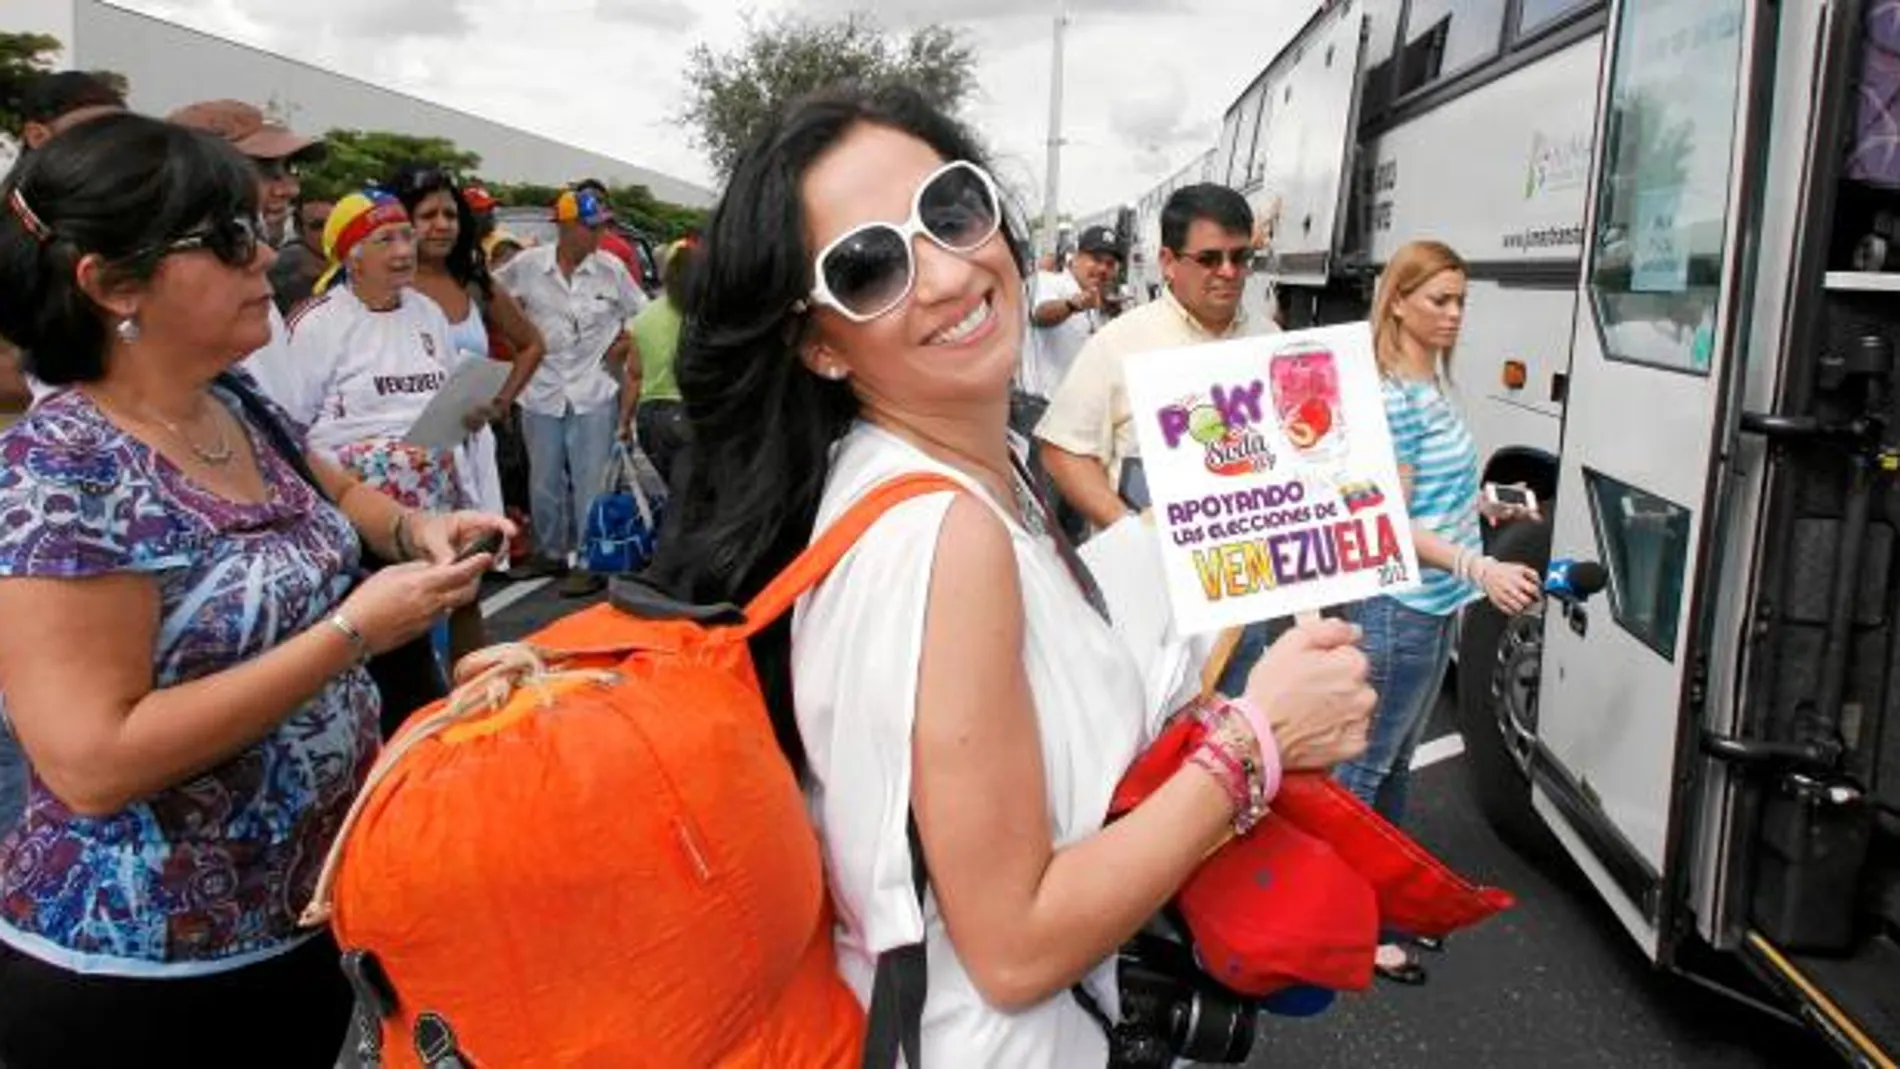 EL VOTO EXTERIOR. Un grupo de venezolanos partió ayer desde Miami en bus para poder votar hoy en Nueva Orleans